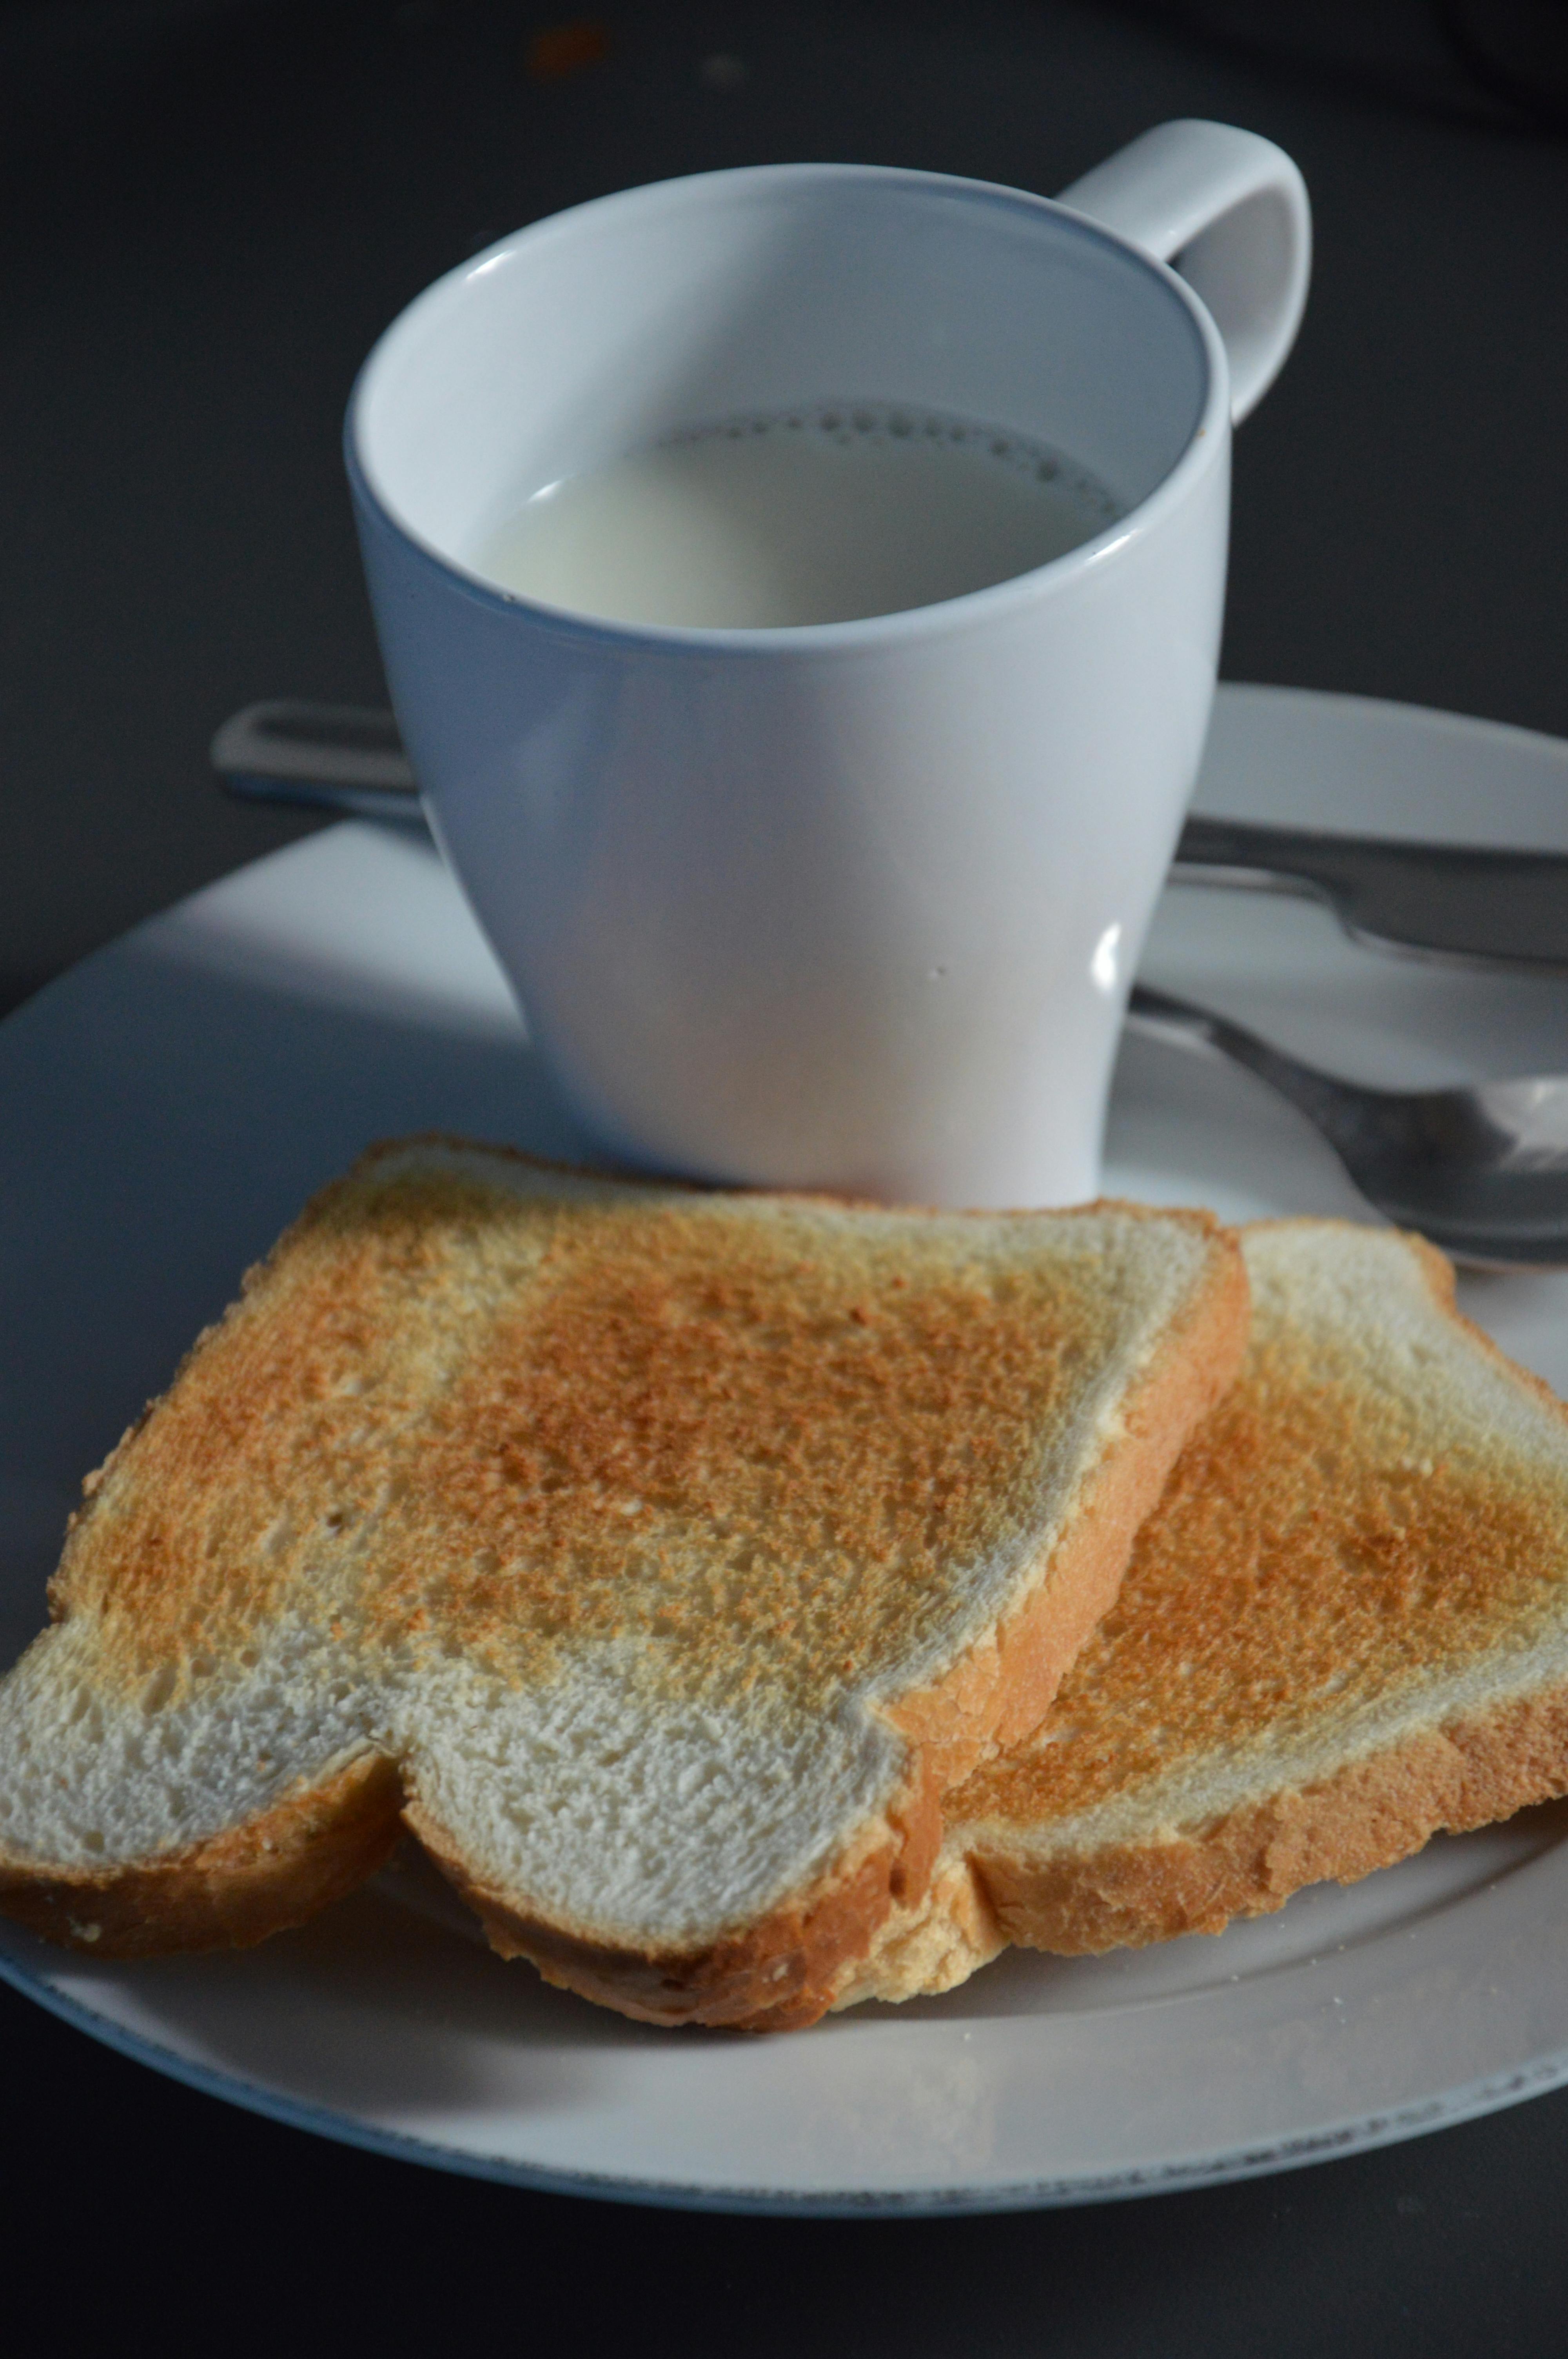 White Ceramic Mug Beside Toasted Bread · Free Stock Photo - 4000 x 6016 jpeg 2449kB